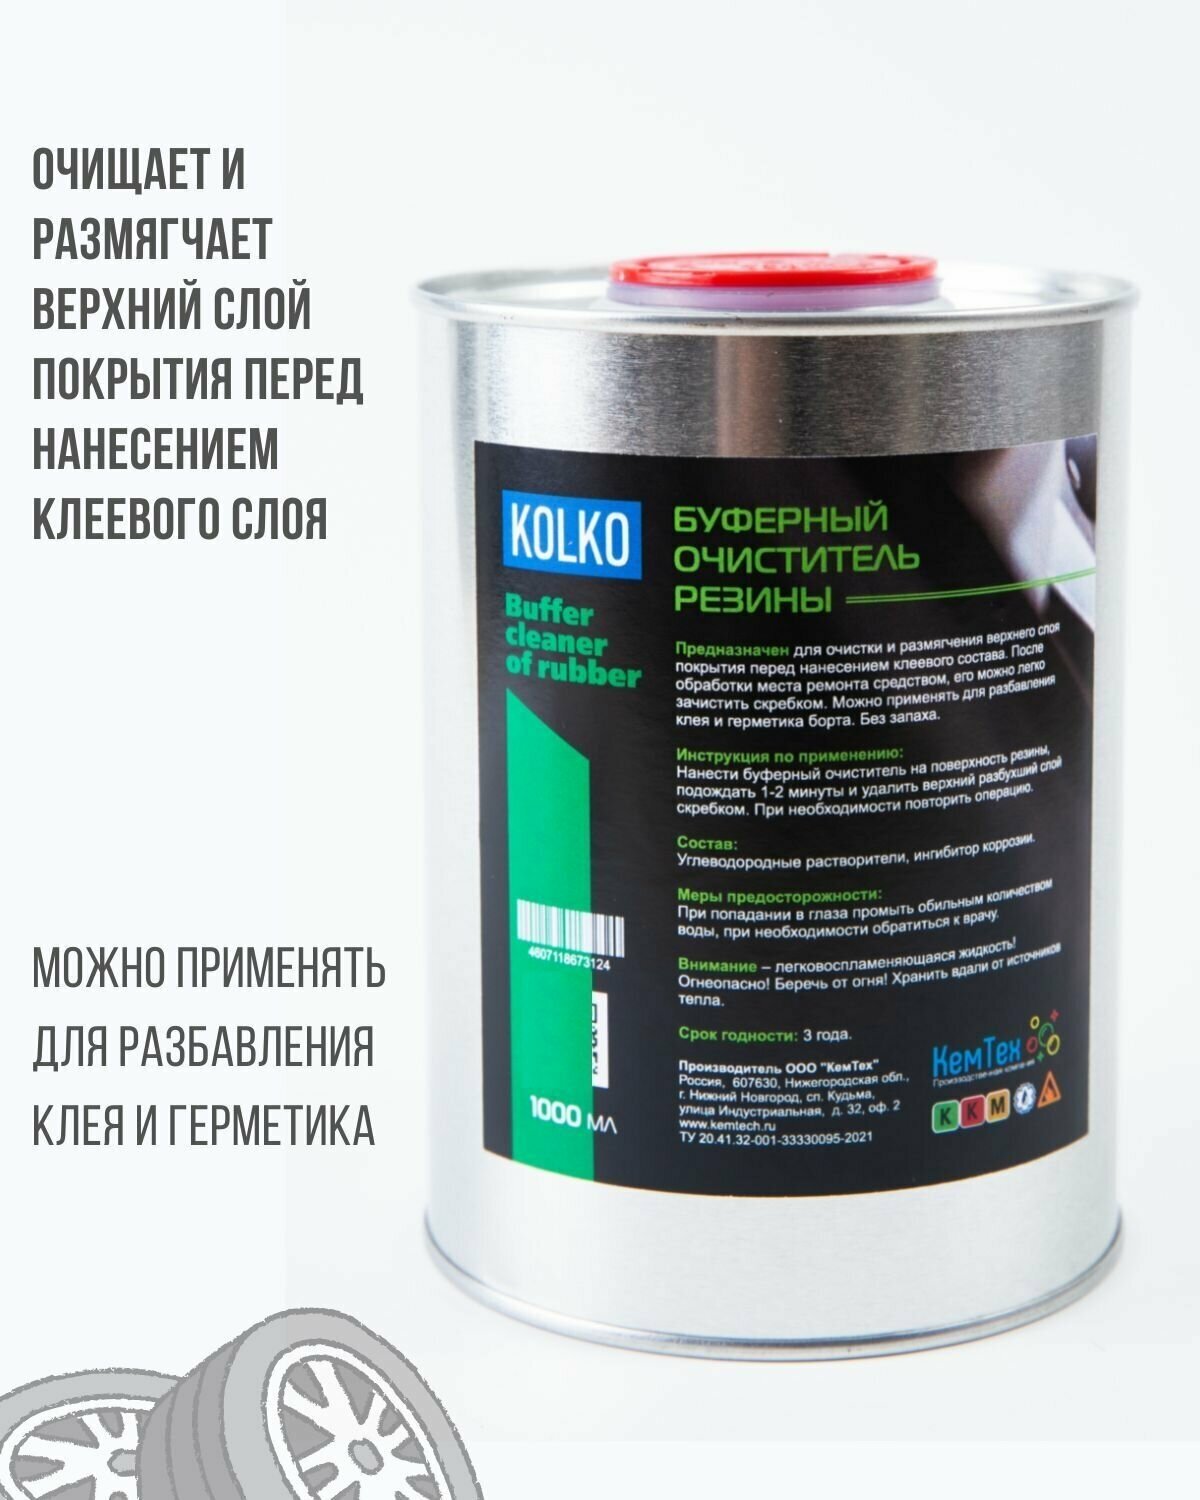 Буферный очиститель резины KOLKO с ингибиторами коррозии 1000 мл